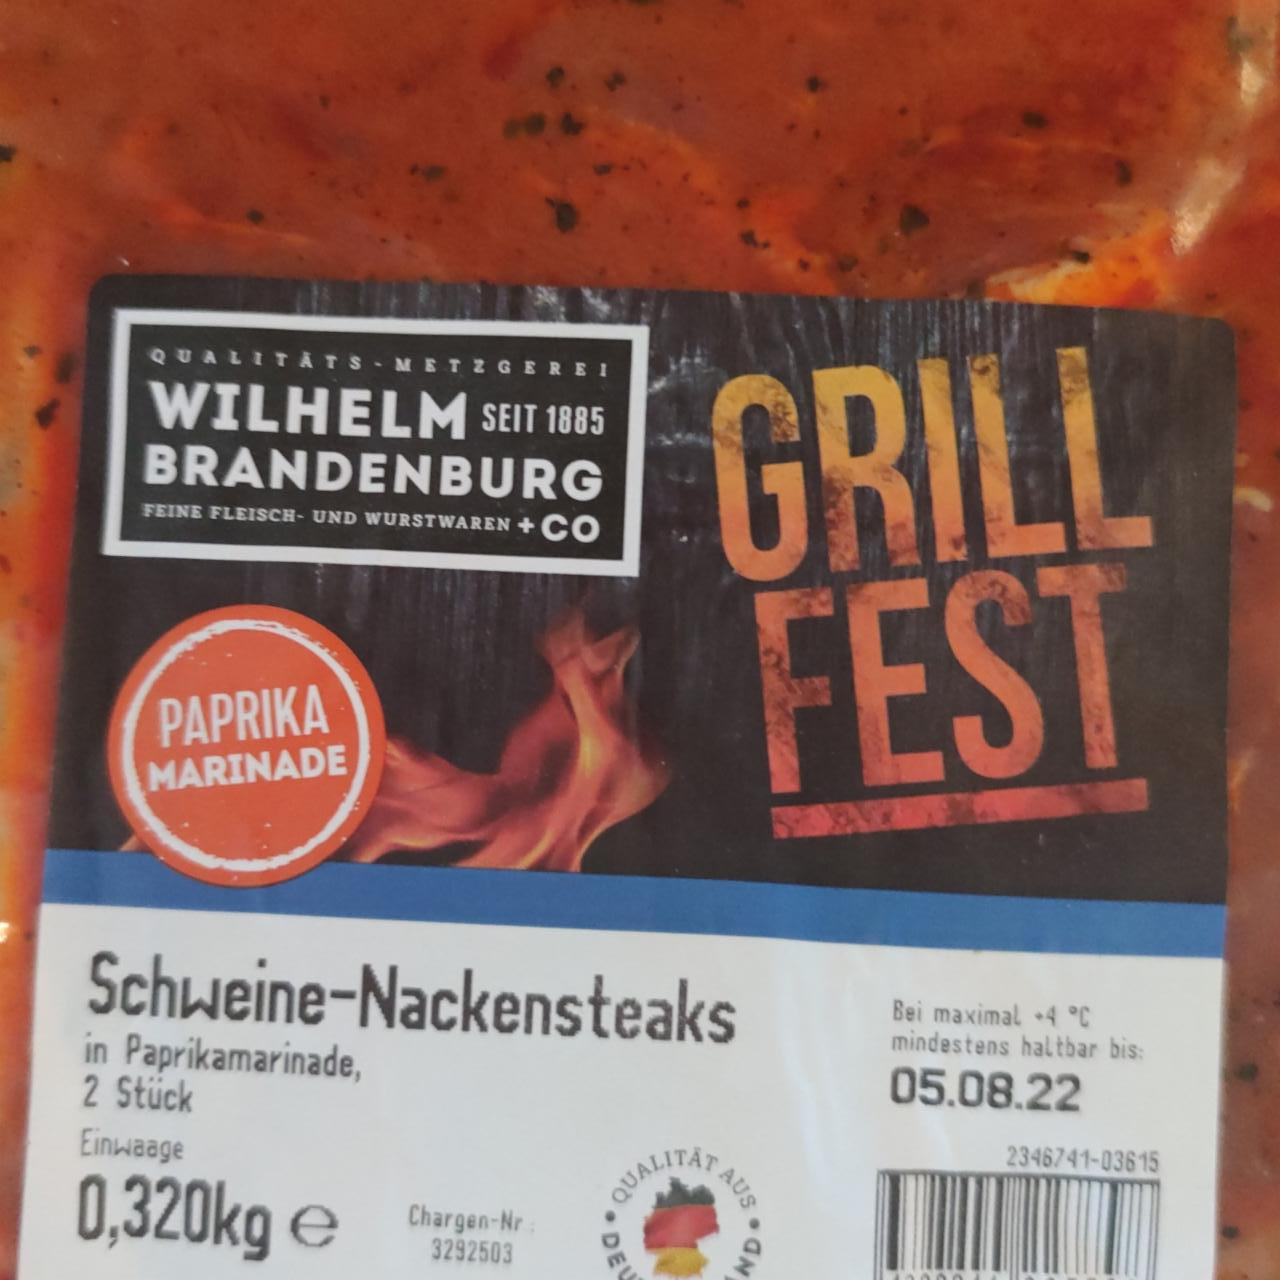 Fotografie - Schweine Nackensteaks Grill Fest